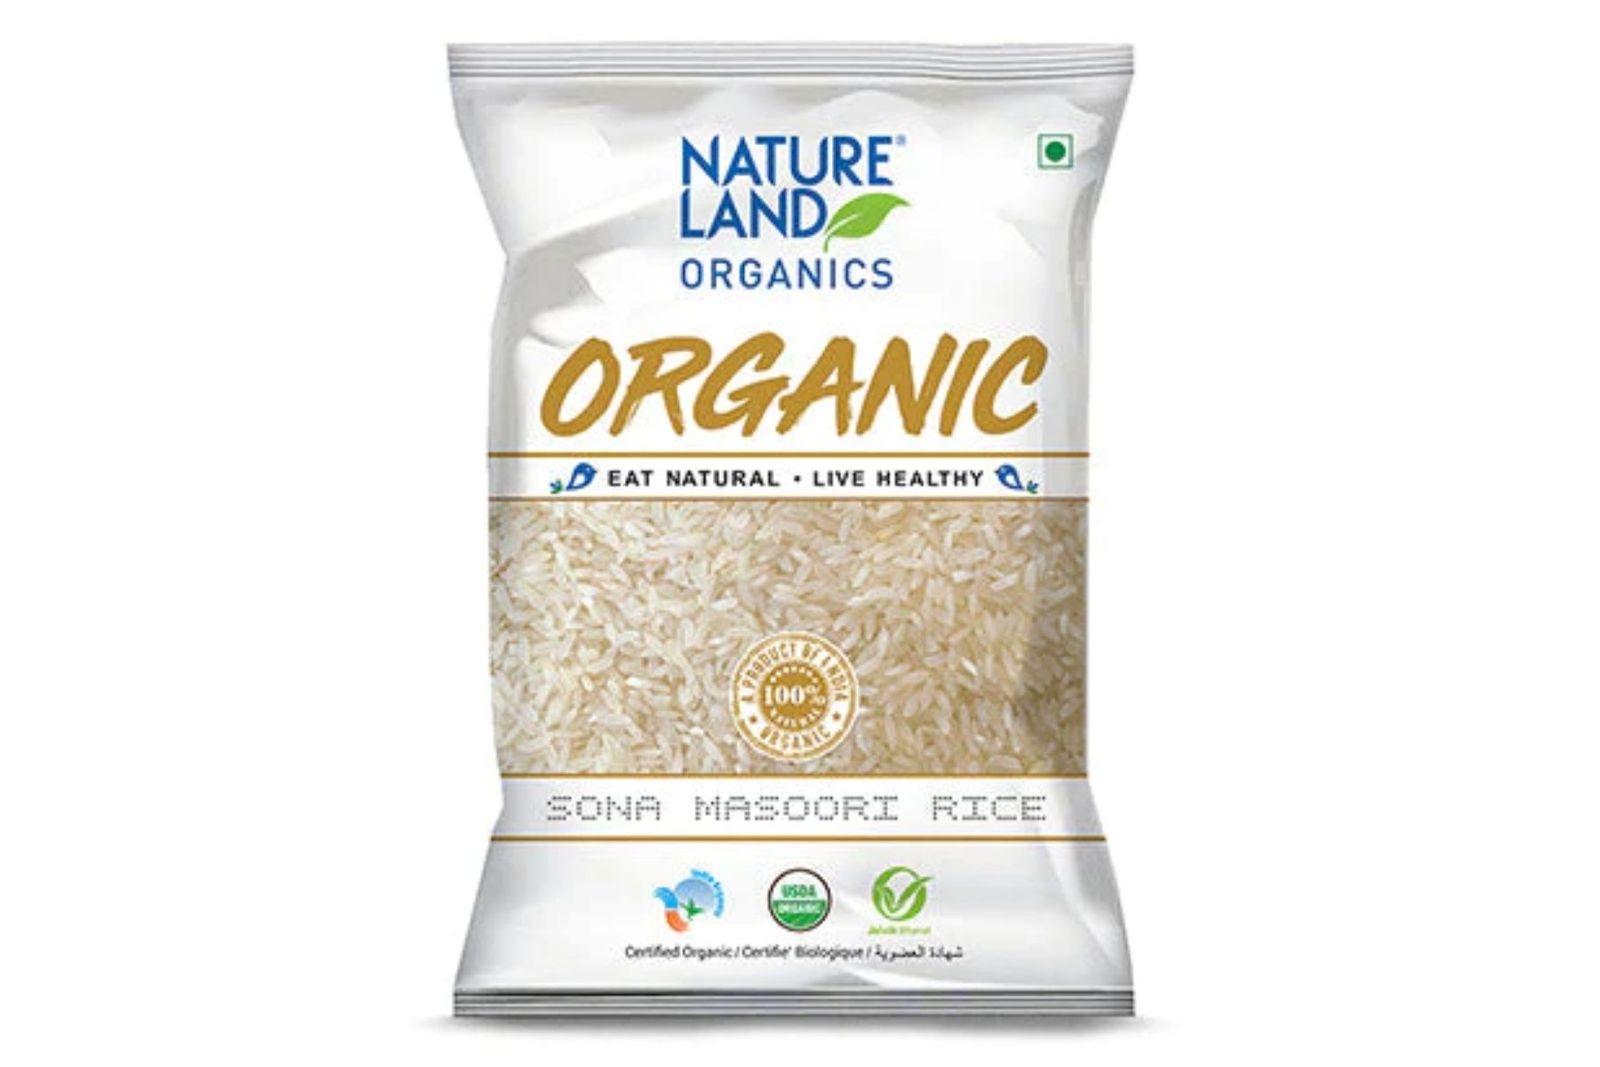 Natureland Organics Sona Mansoori Rice